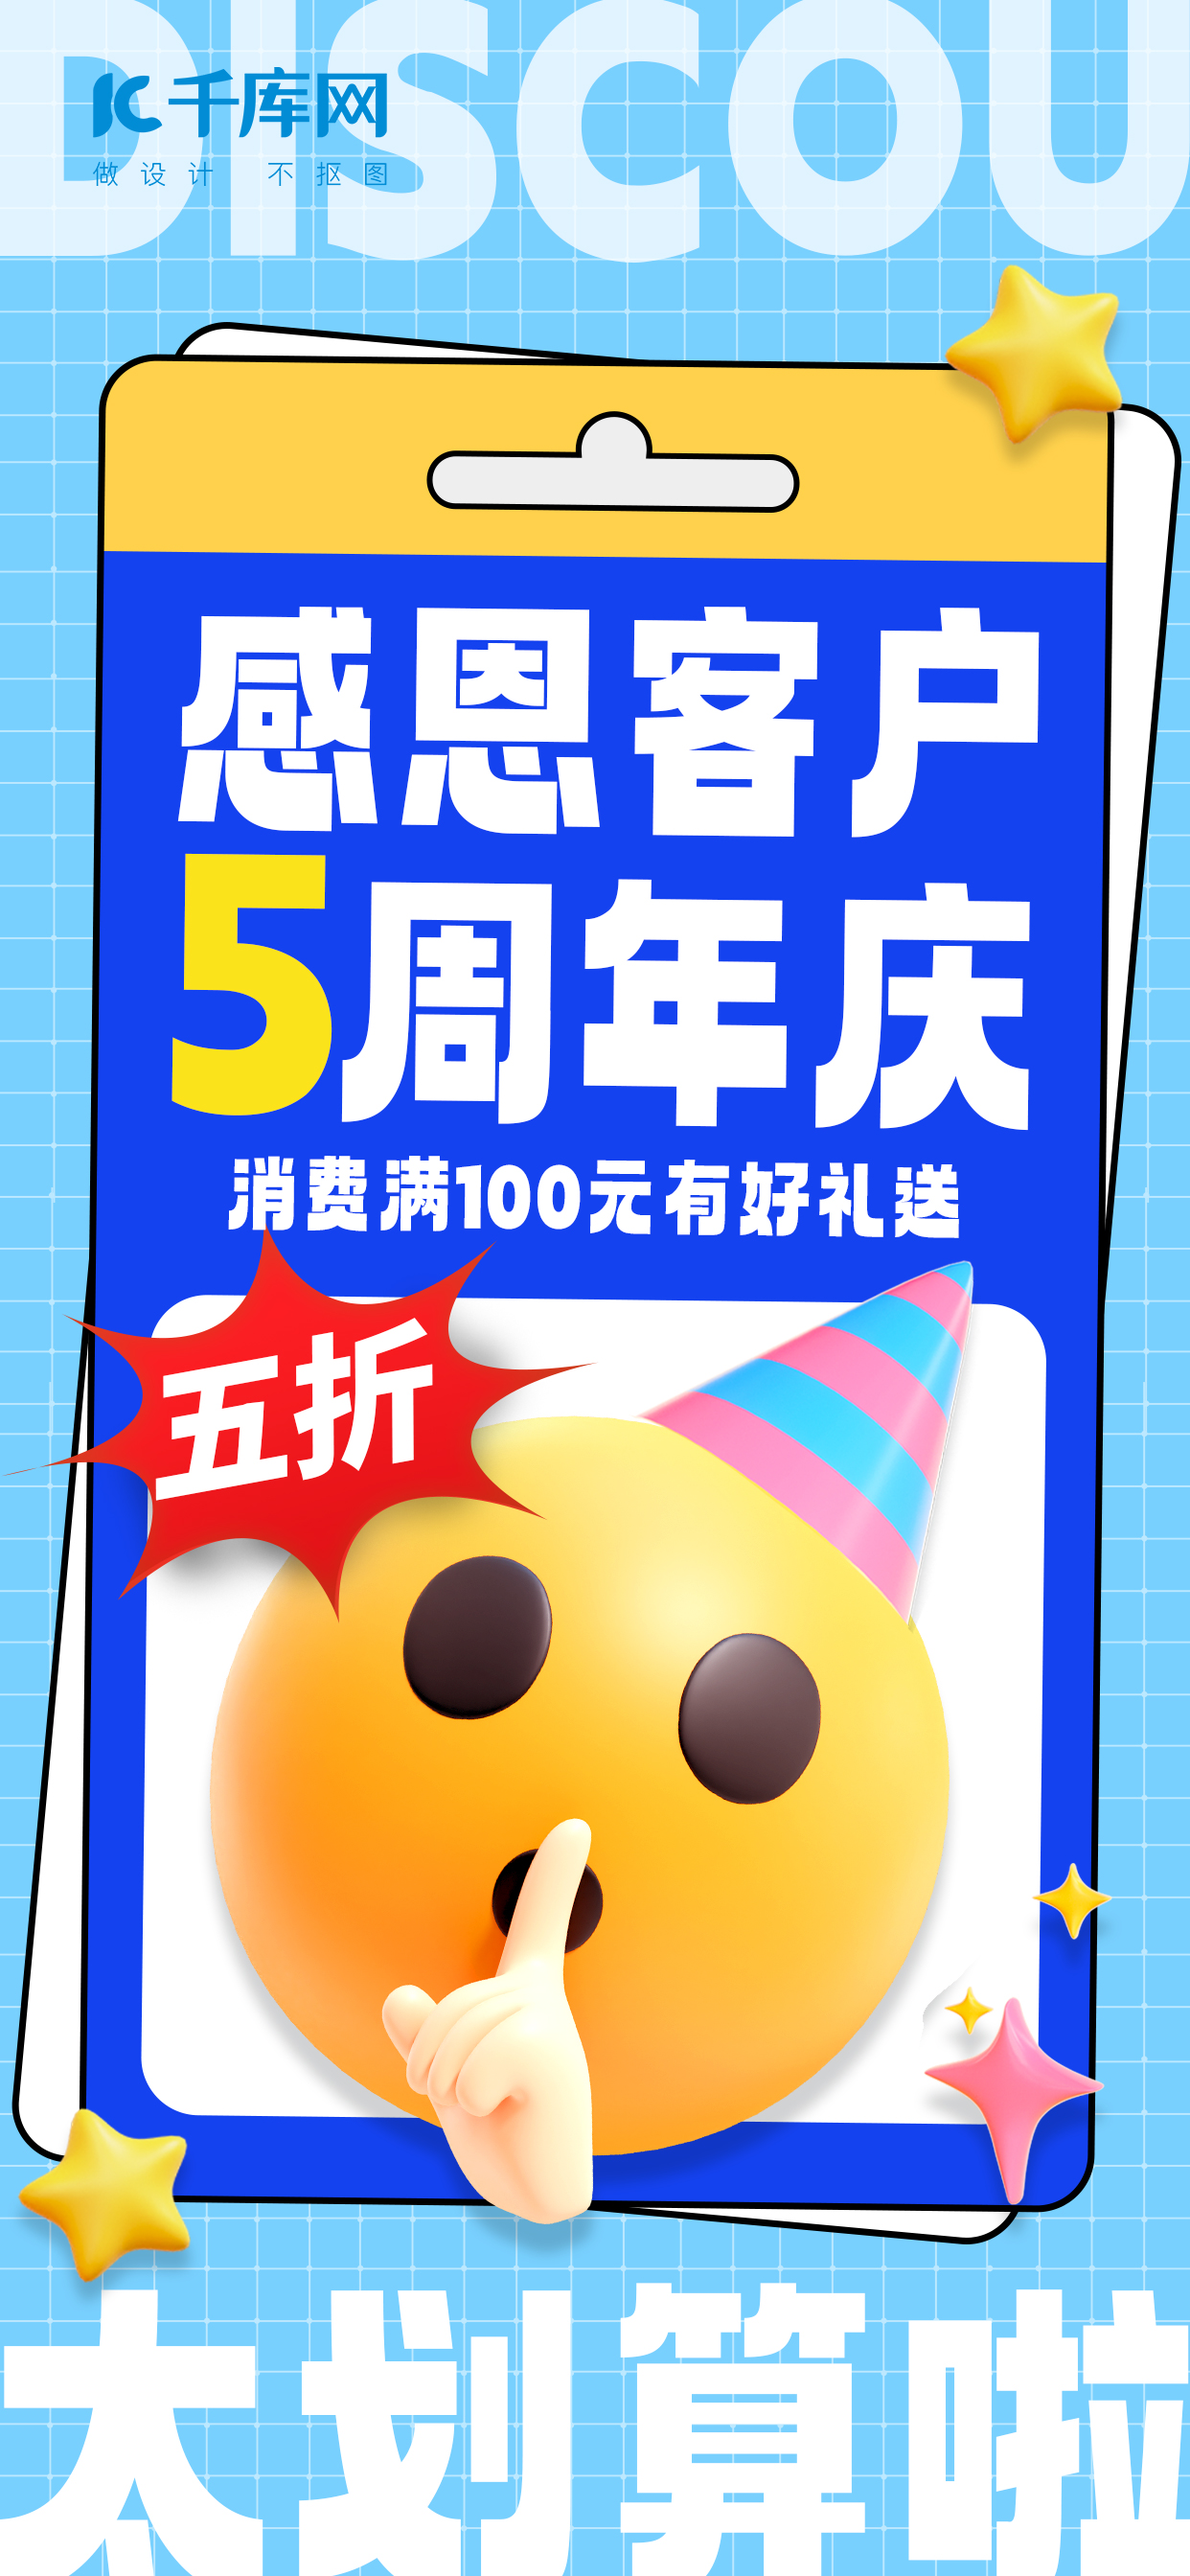 感恩客户周年庆emoji蓝色emoji风海报宣传海报设计图片